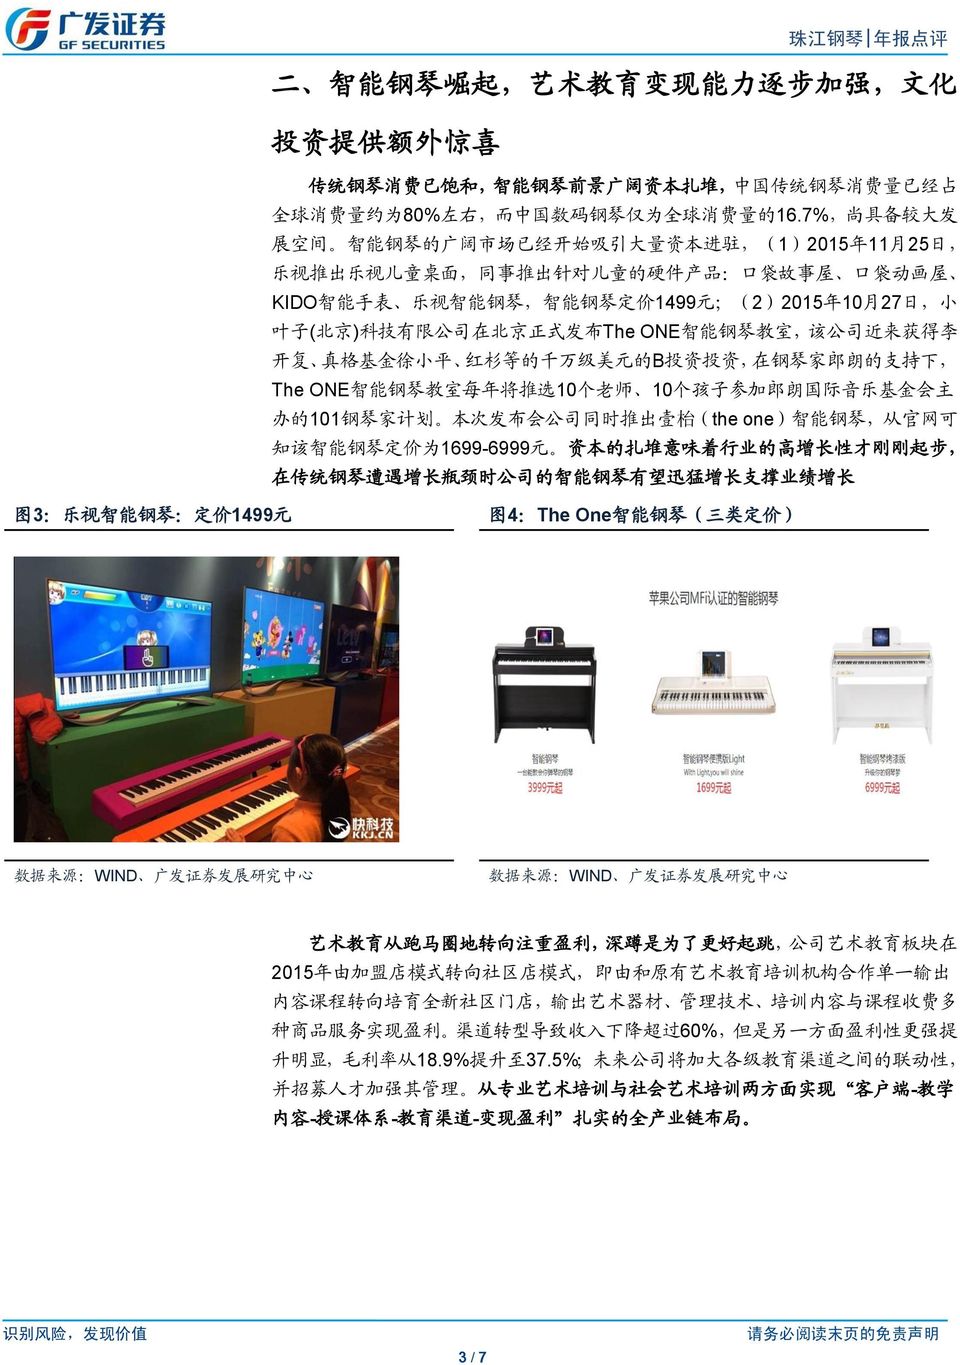 ;(2)2015 年 10 月 27 日, 小 叶 子 ( 北 京 ) 科 技 有 限 公 司 在 北 京 正 式 发 布 The ONE 智 能 钢 琴 教 室, 该 公 司 近 来 获 得 李 开 复 真 格 基 金 徐 小 平 红 杉 等 的 千 万 级 美 元 的 B 投 资 投 资, 在 钢 琴 家 郎 朗 的 支 持 下, The ONE 智 能 钢 琴 教 室 每 年 将 推 选